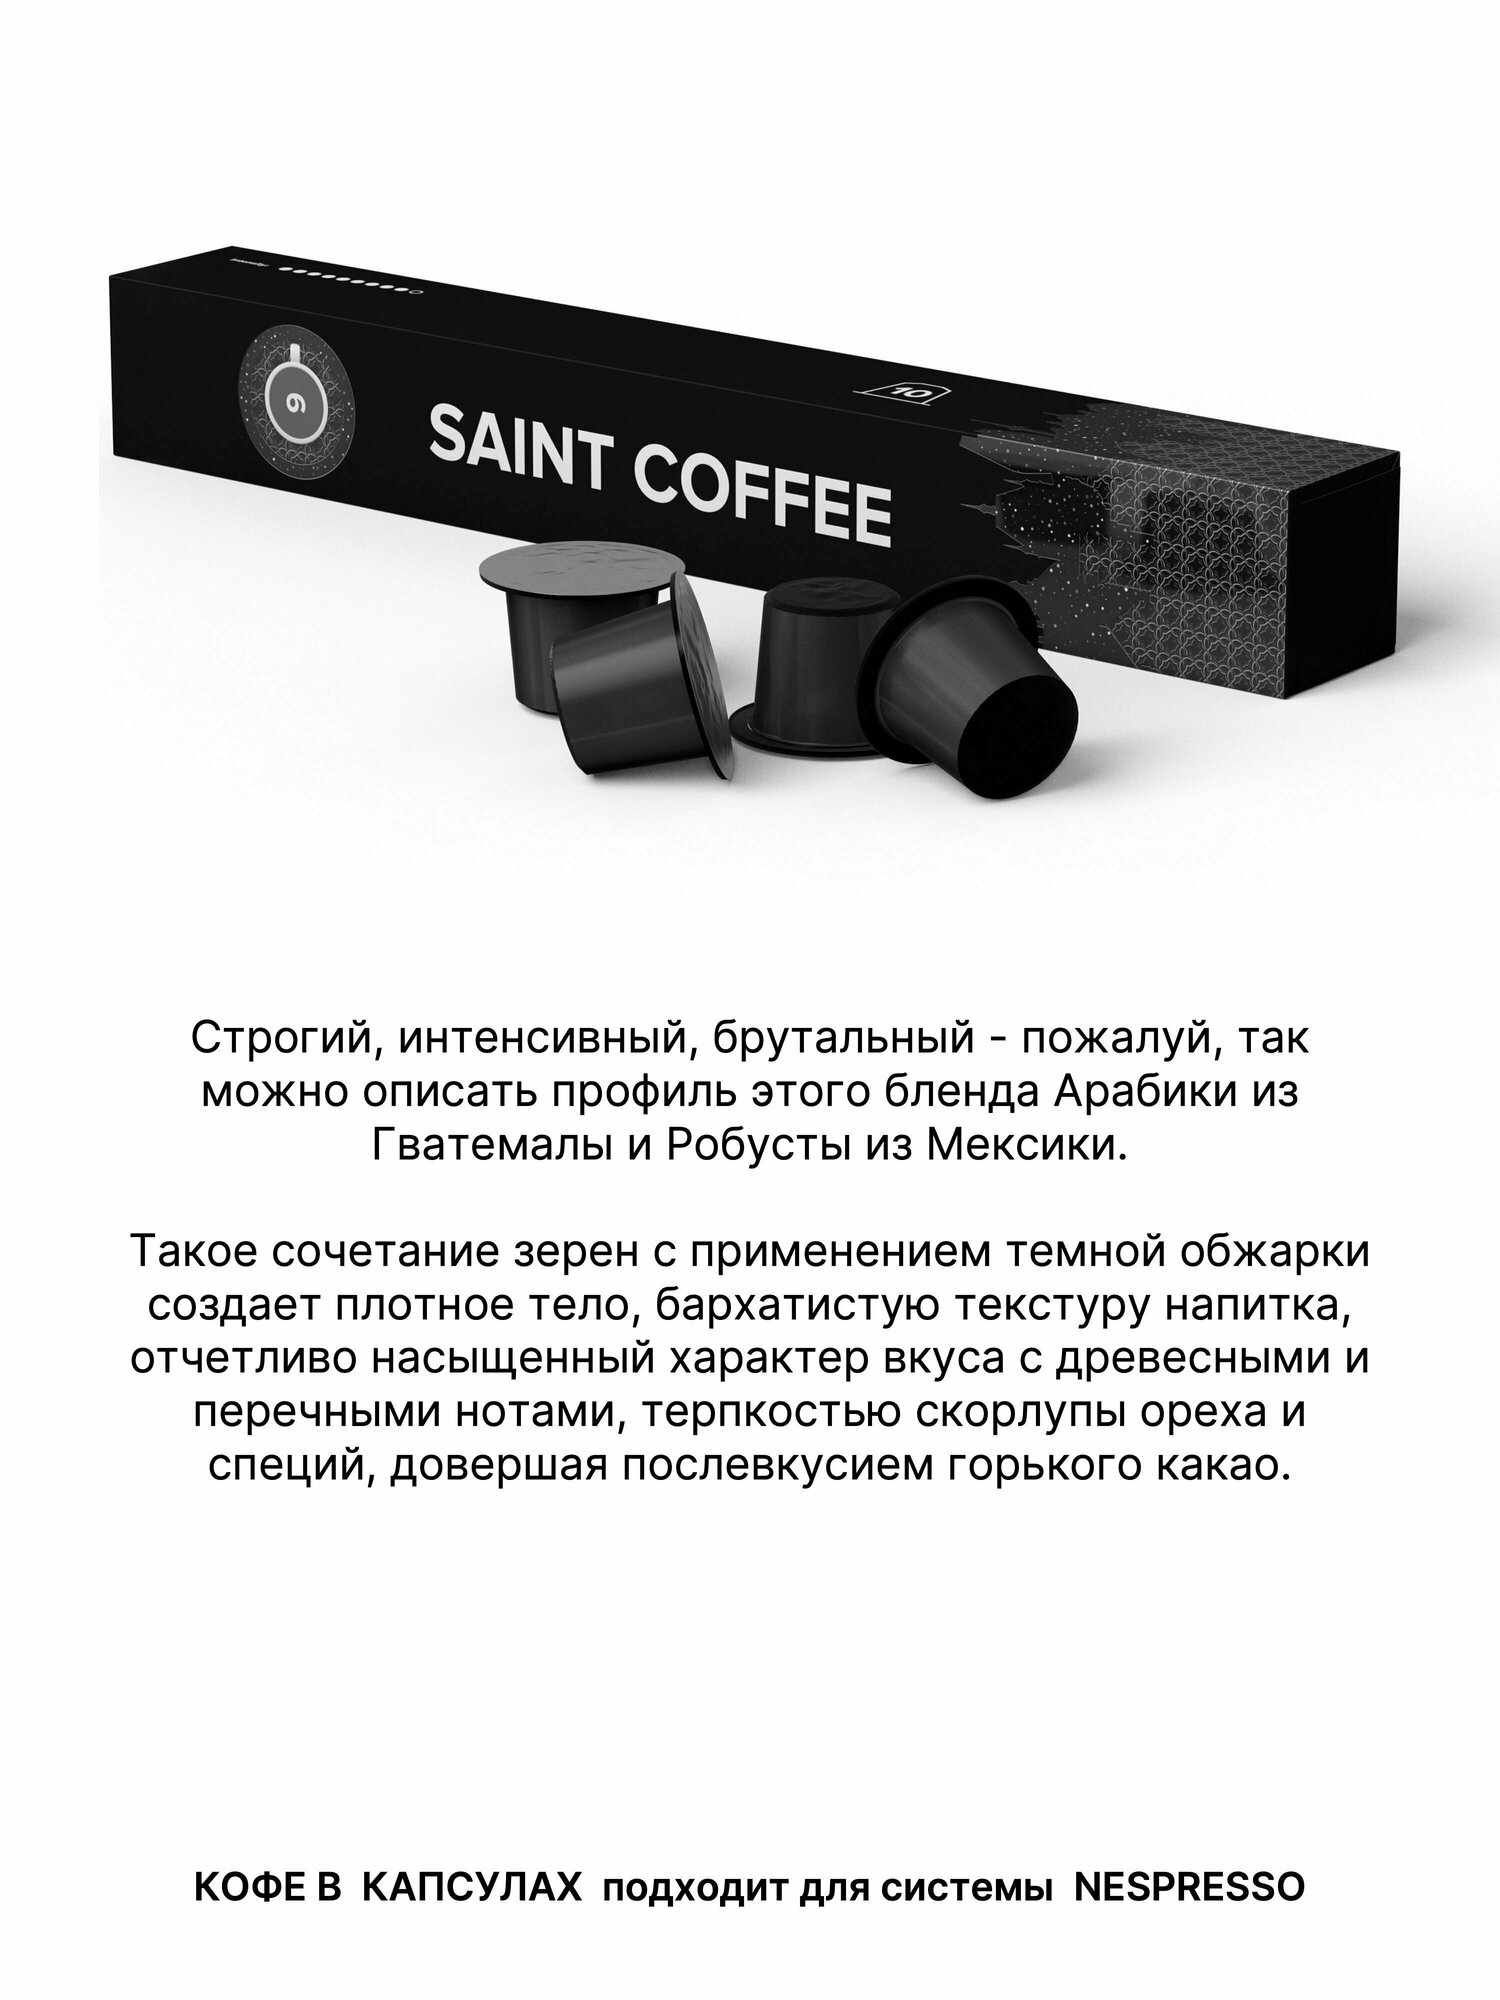 Кофе в капсулах SAINT COFFEE Бленд 9 для кофемашины для системы Nespresso - фотография № 5